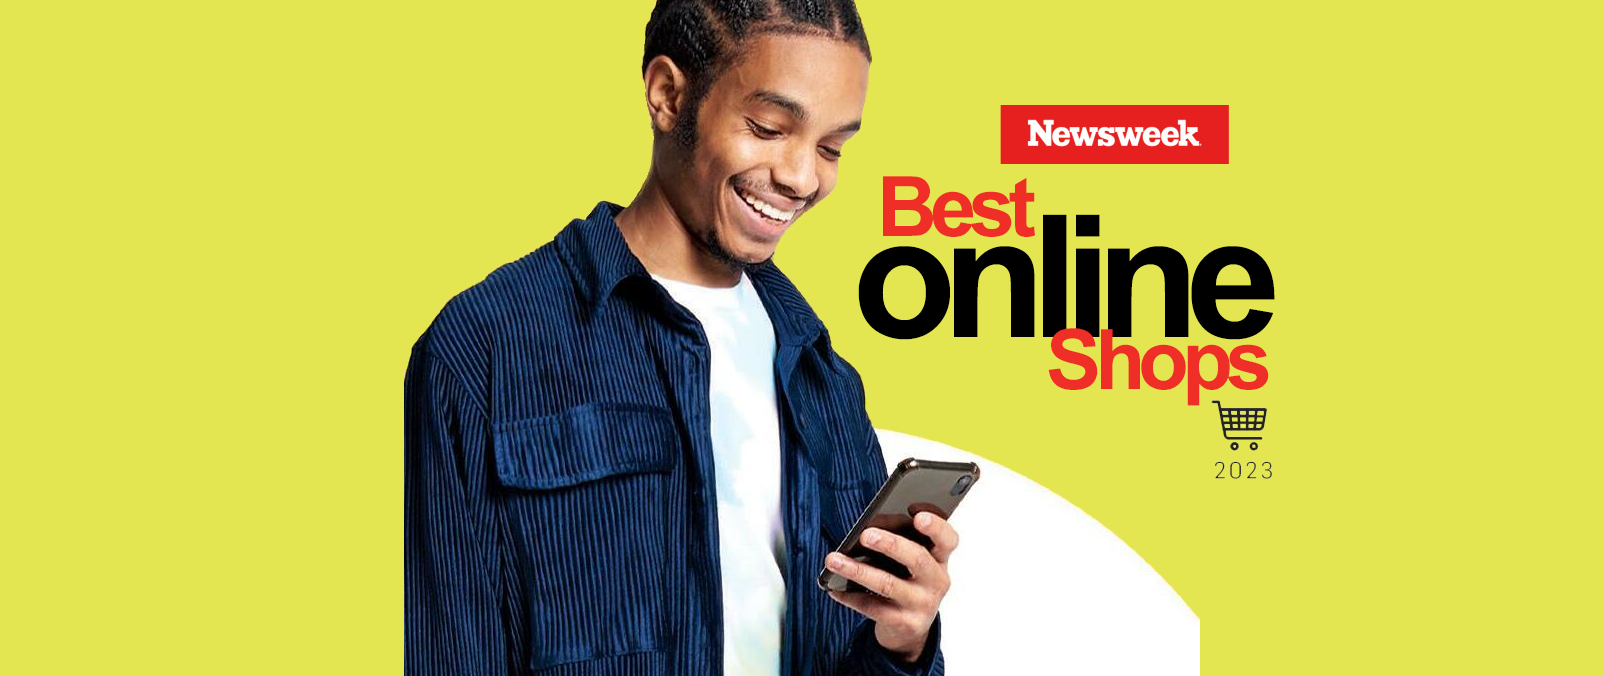 19 CQL Client Brands Named Newsweek’s Best Online Shops for 2023 CQL